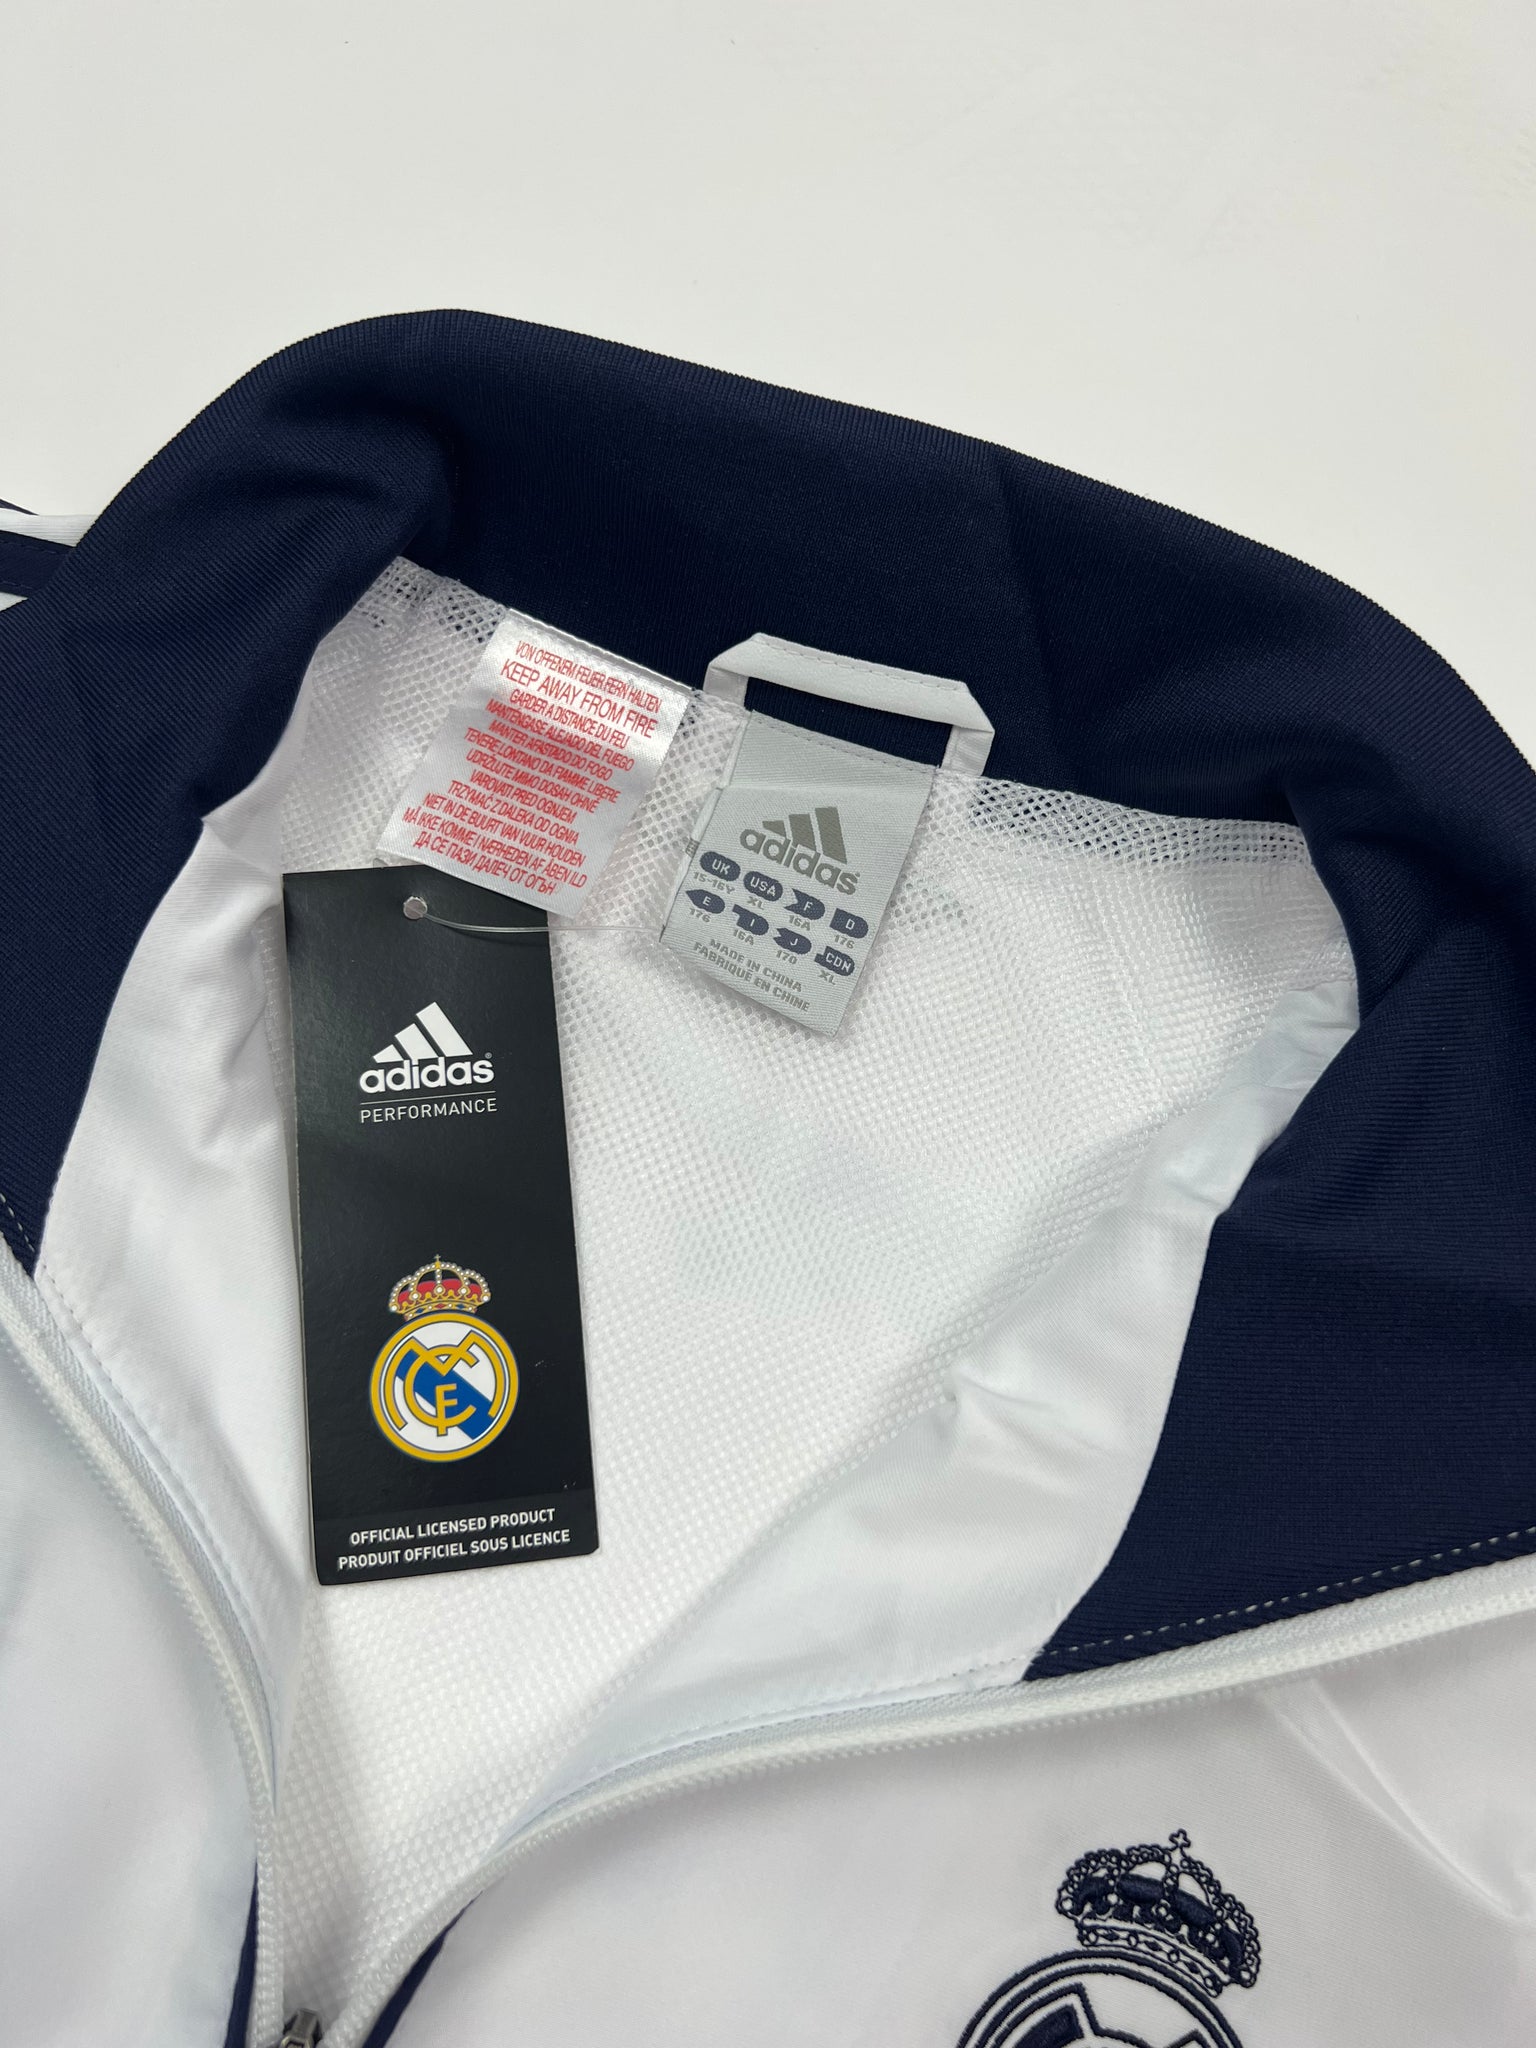 Adidas Real Madrid Tracksuit (Kids XL)